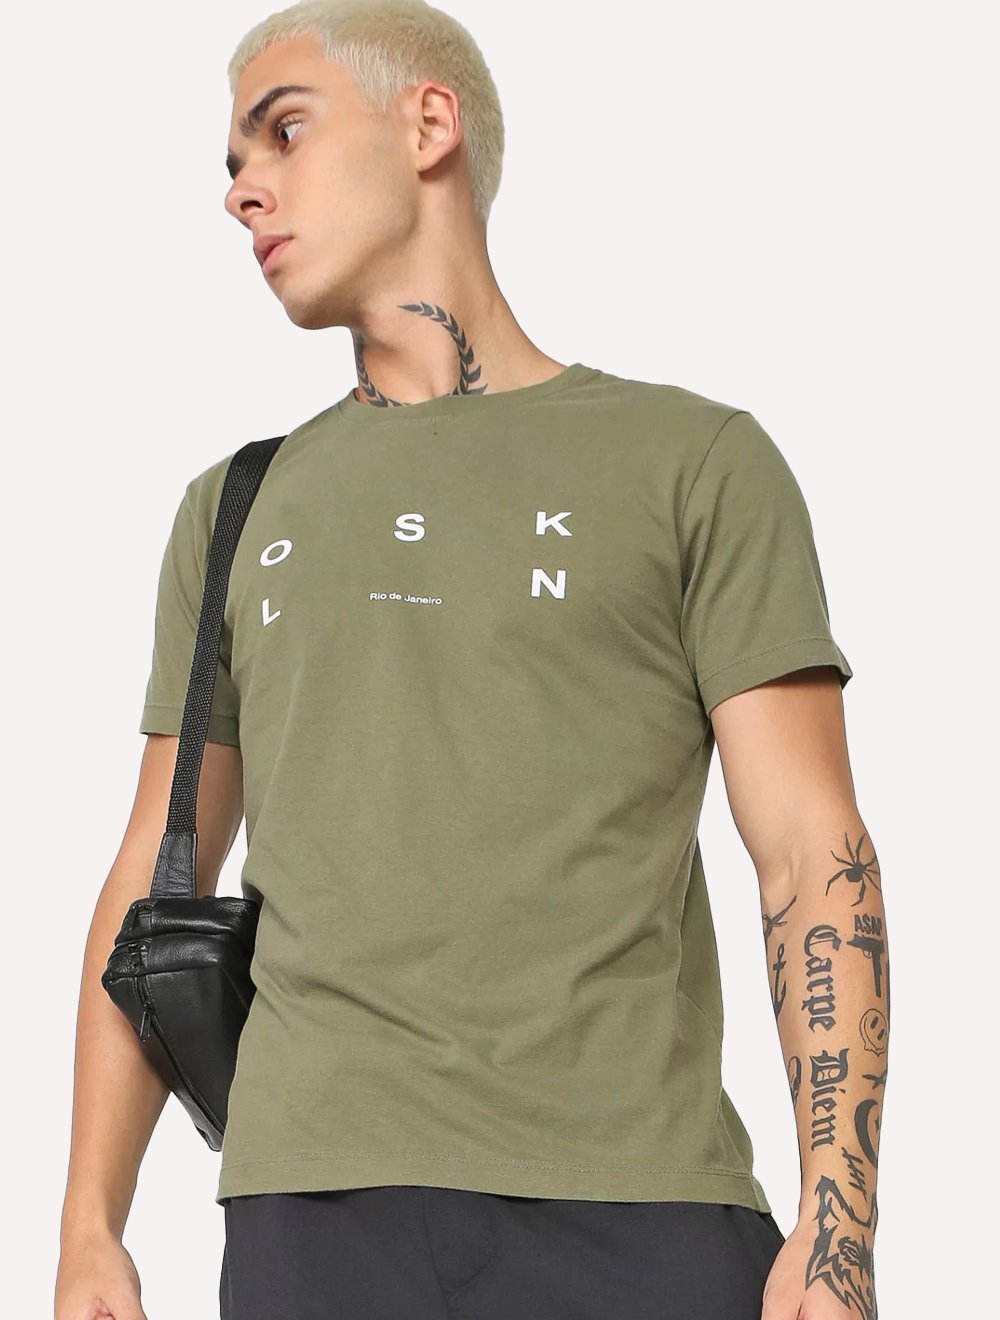 Camiseta Osklen Masculina Slim Vintage OSK RJ Verde